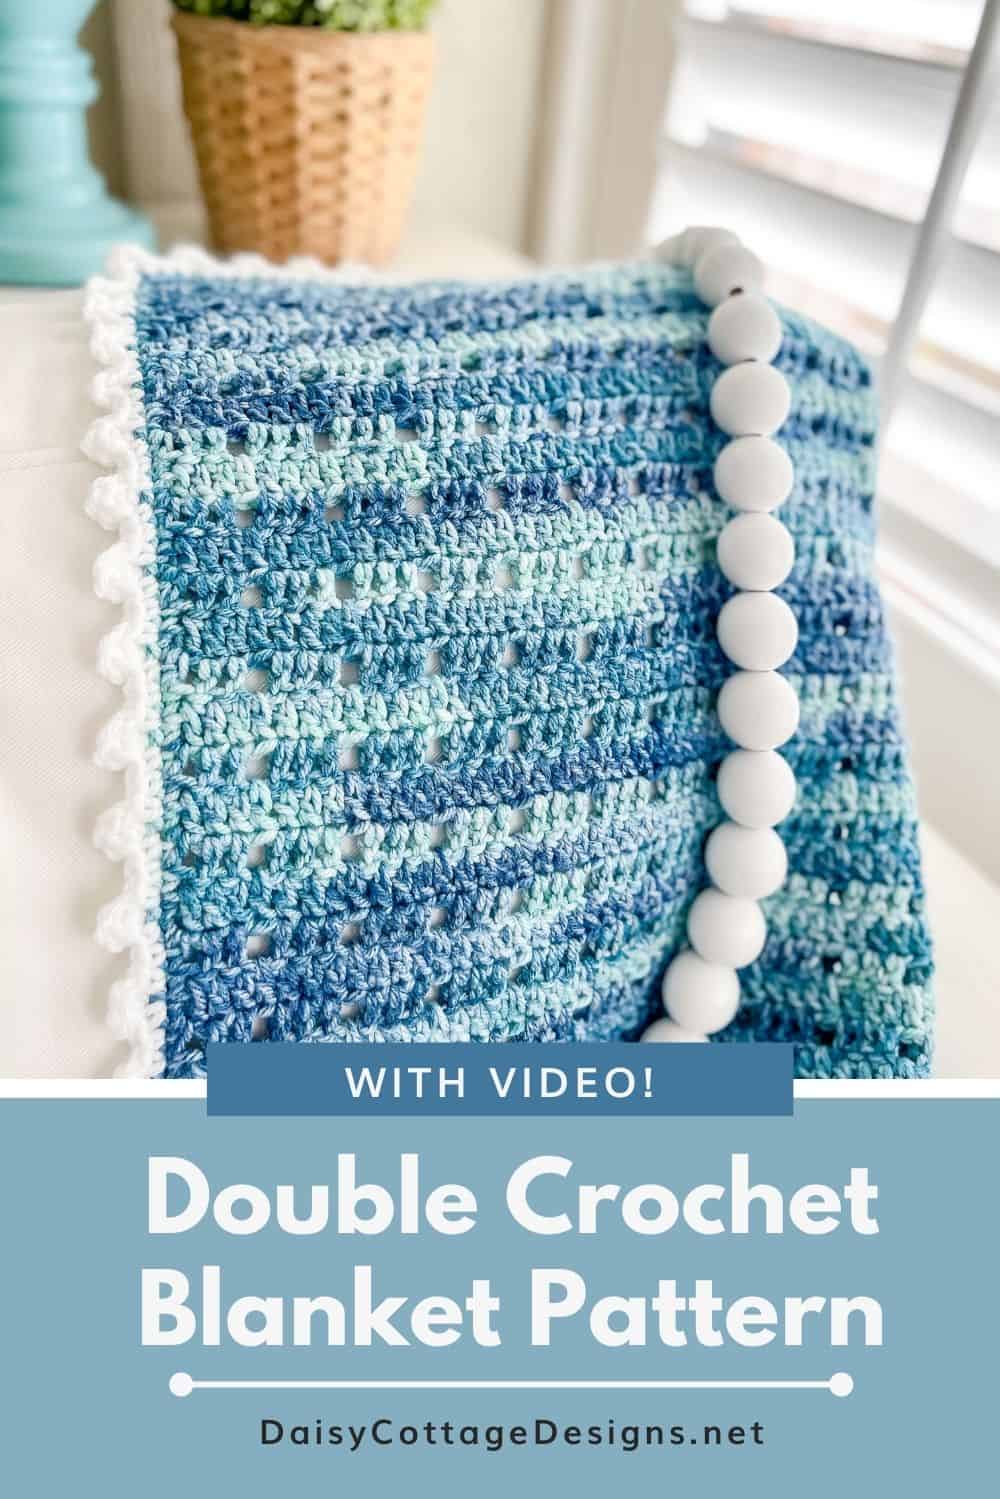 Double Crochet Blanket Pattern Image